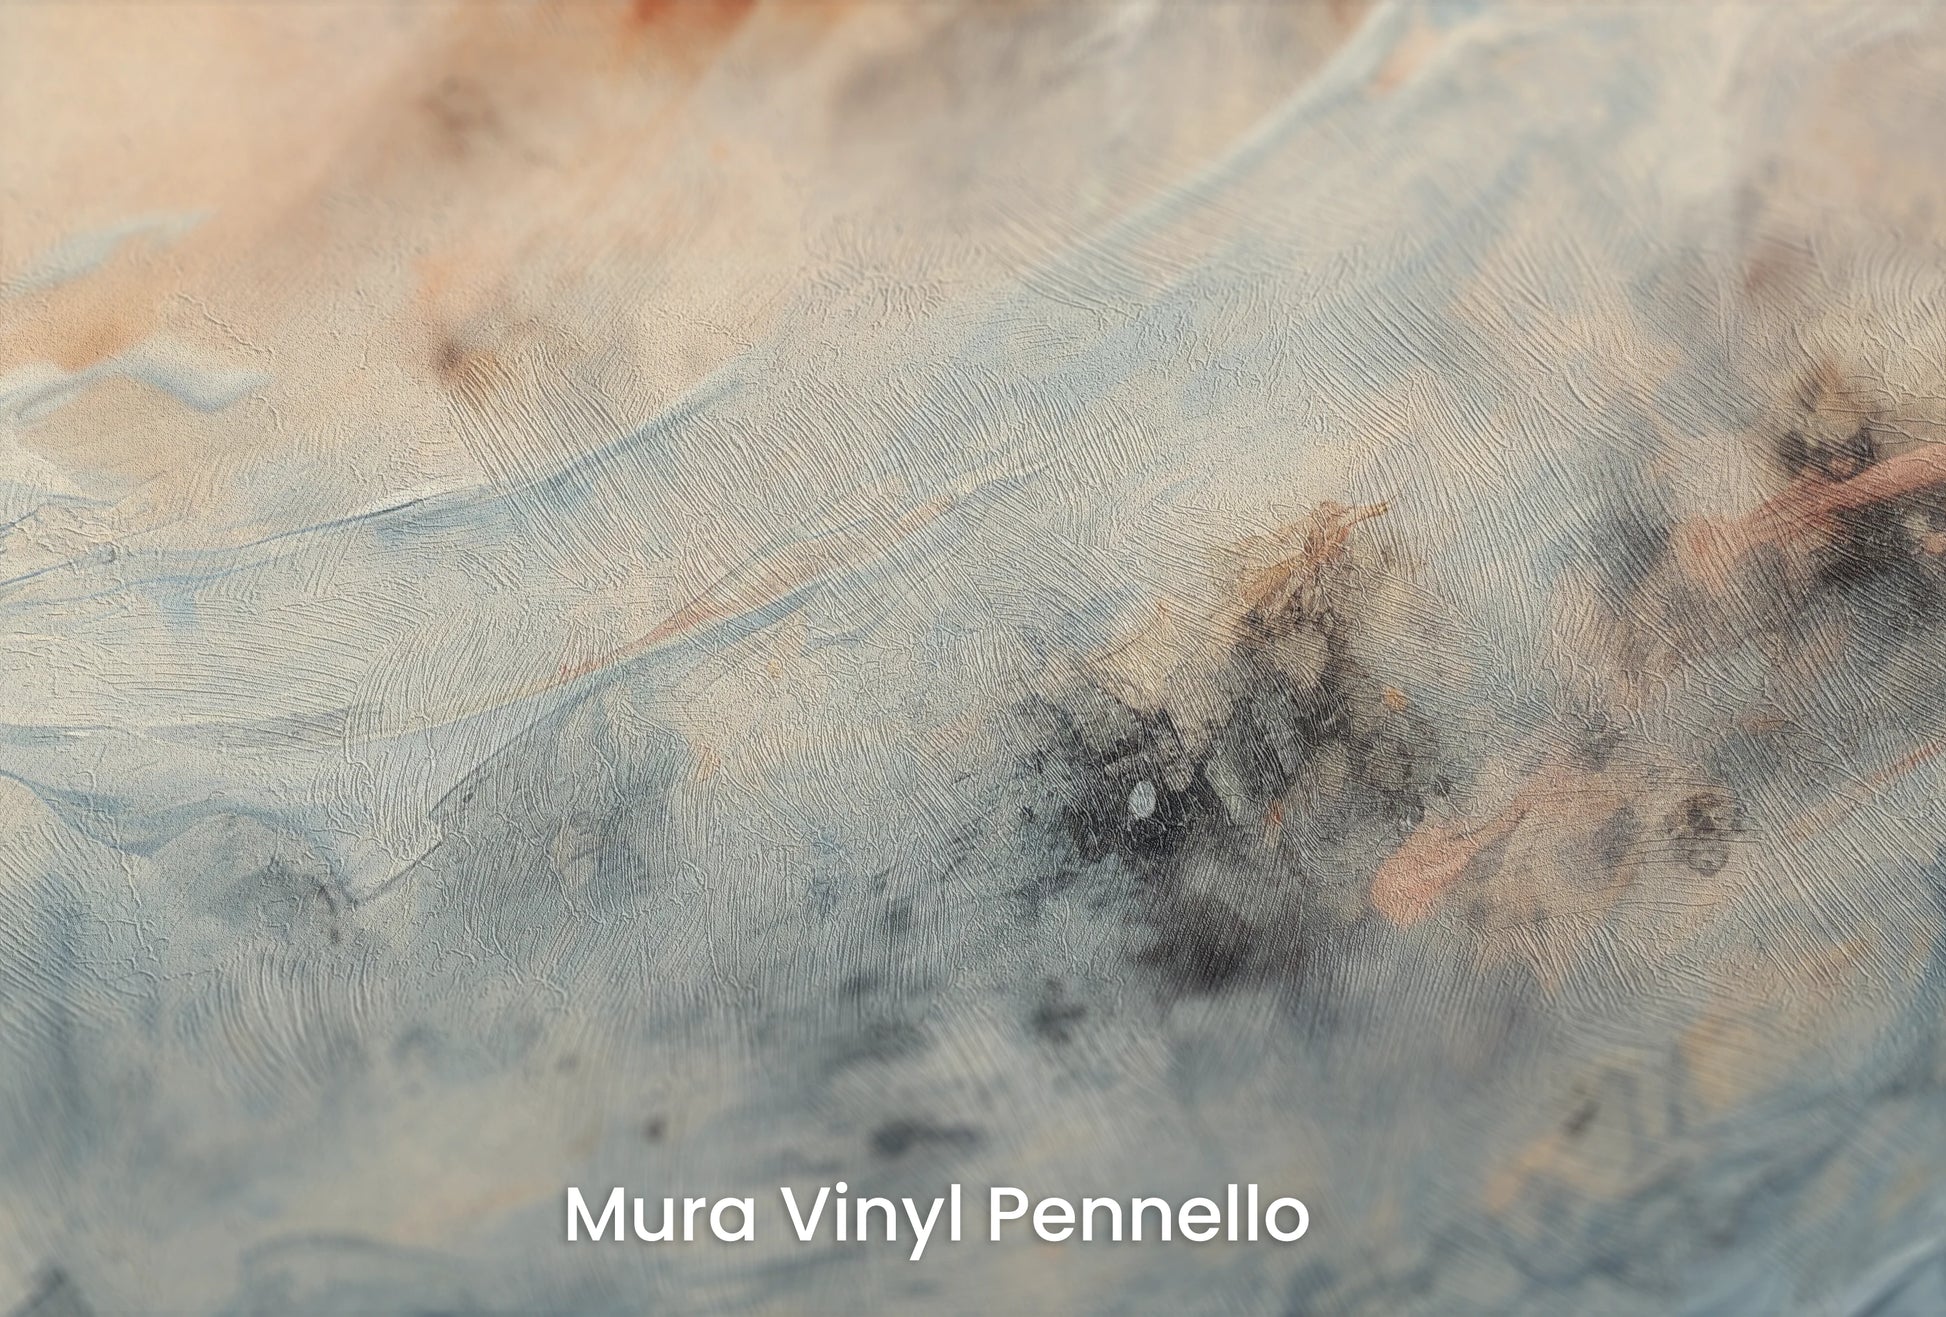 Zbliżenie na artystyczną fototapetę o nazwie Moon's Tranquility na podłożu Mura Vinyl Pennello - faktura pociągnięć pędzla malarskiego.